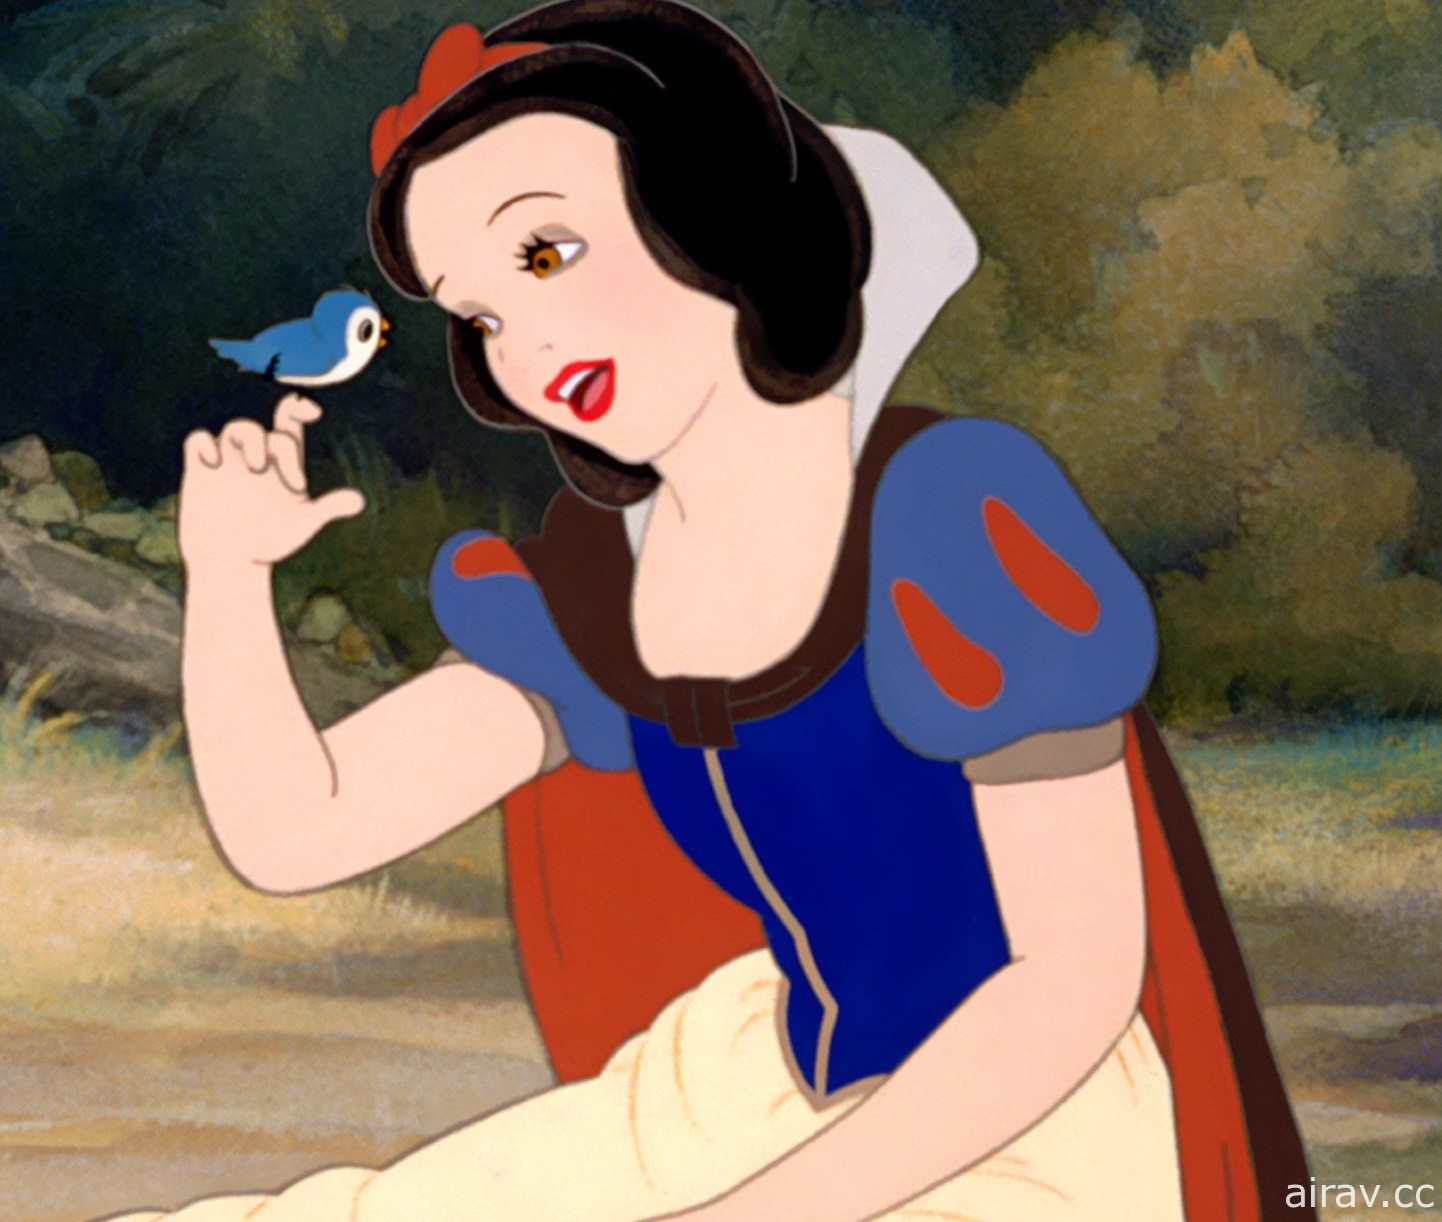 迪士尼《白雪公主》改编真人电影 坏皇后将由盖儿加朵担纲饰演